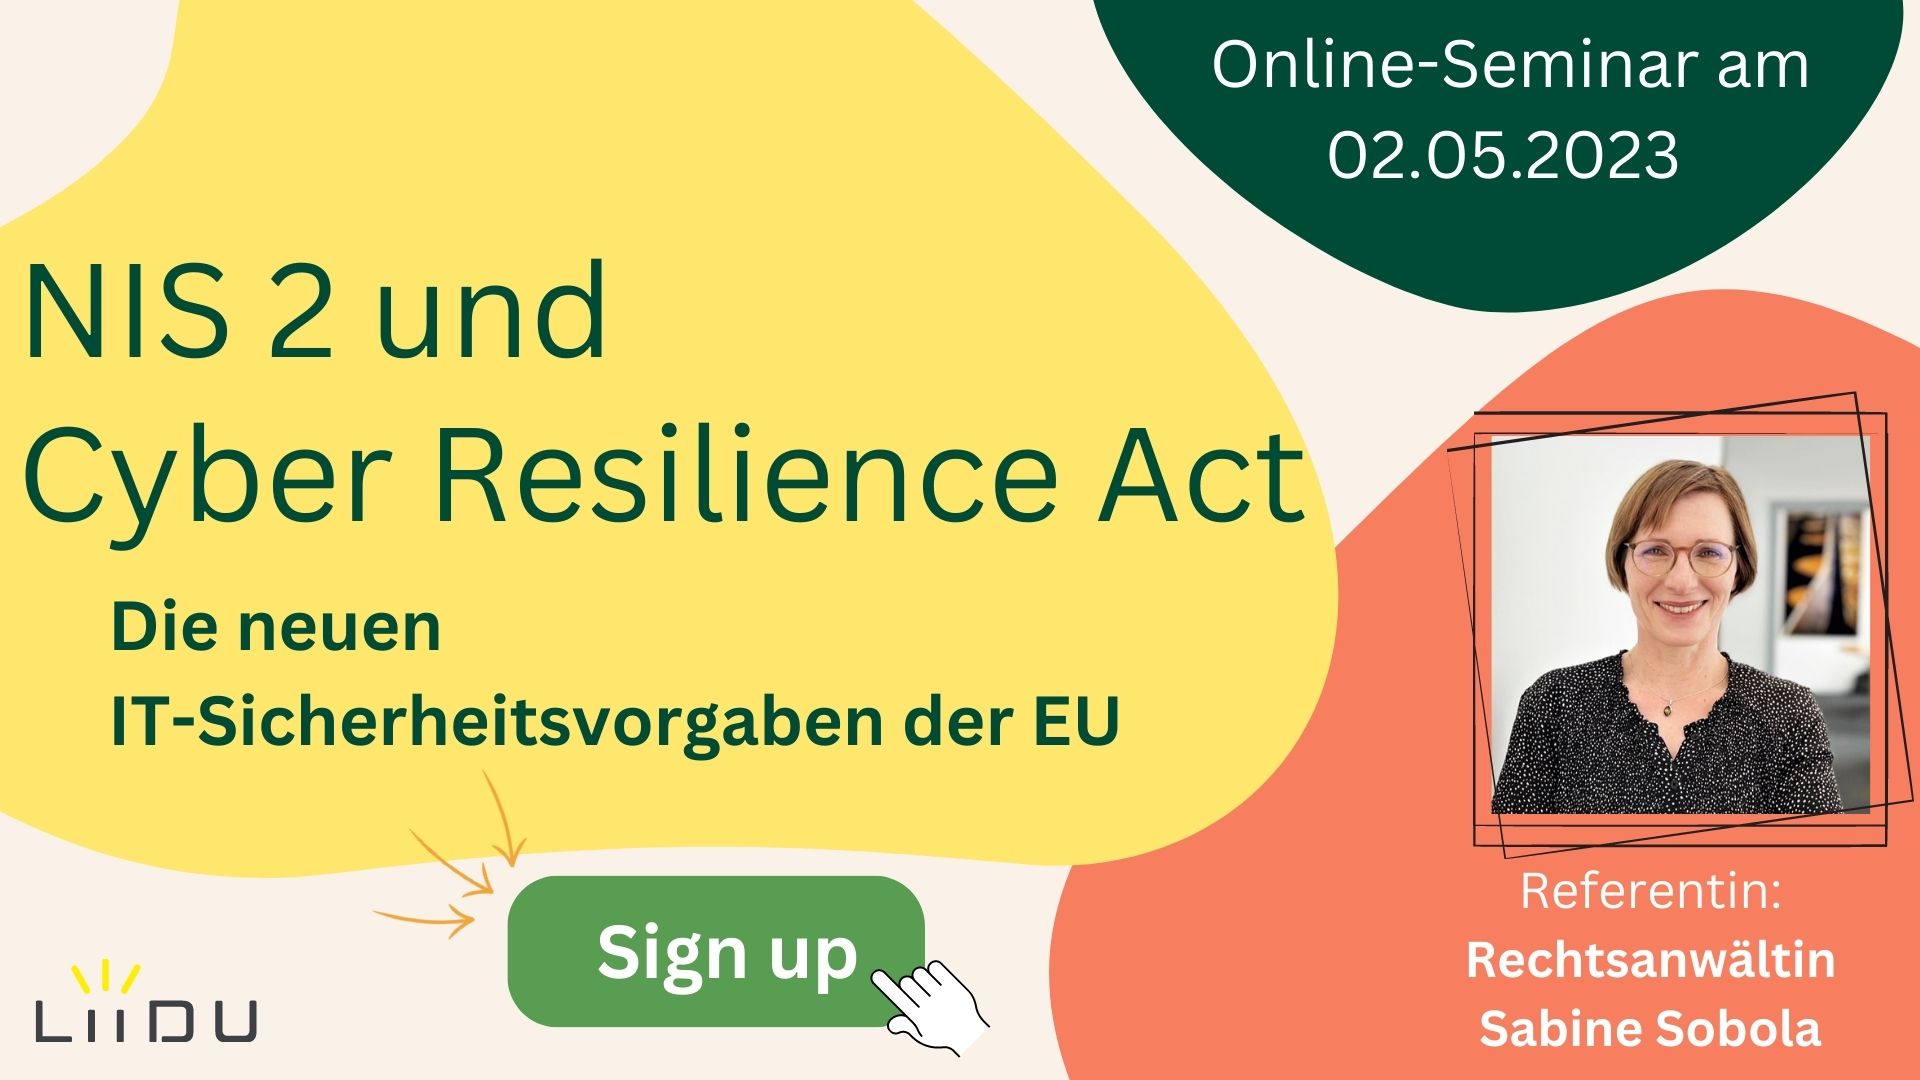 NIS 2 und Cyber Resilience Act
Die neuen IT-Sicherheitsvorgaben der EU 